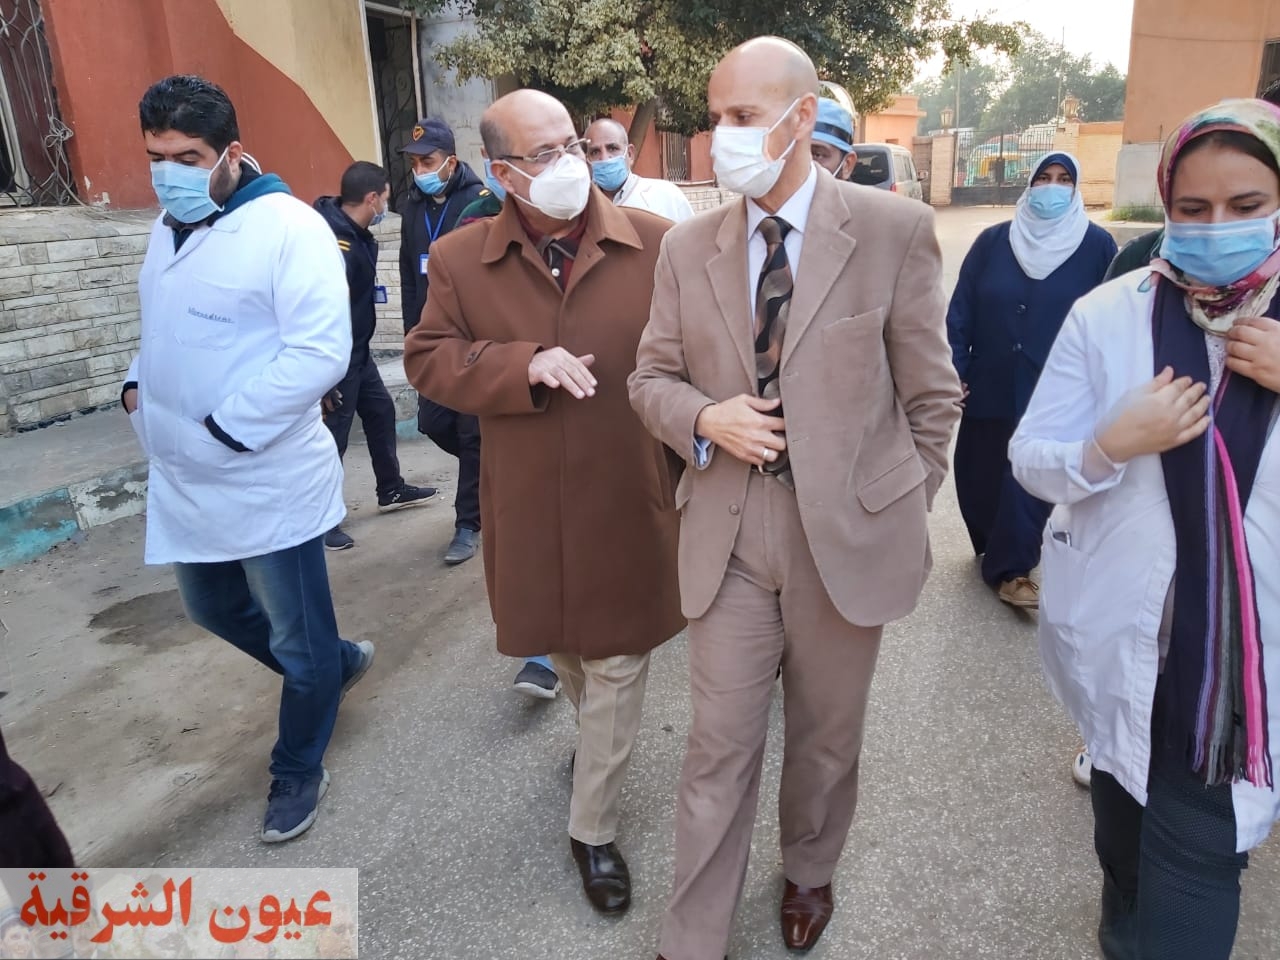 تحصيل غرامة فورية من 86 مواطن لعدم إلتزامهم بإرتداء الكمامة الواقية بمدينة الزقازيق